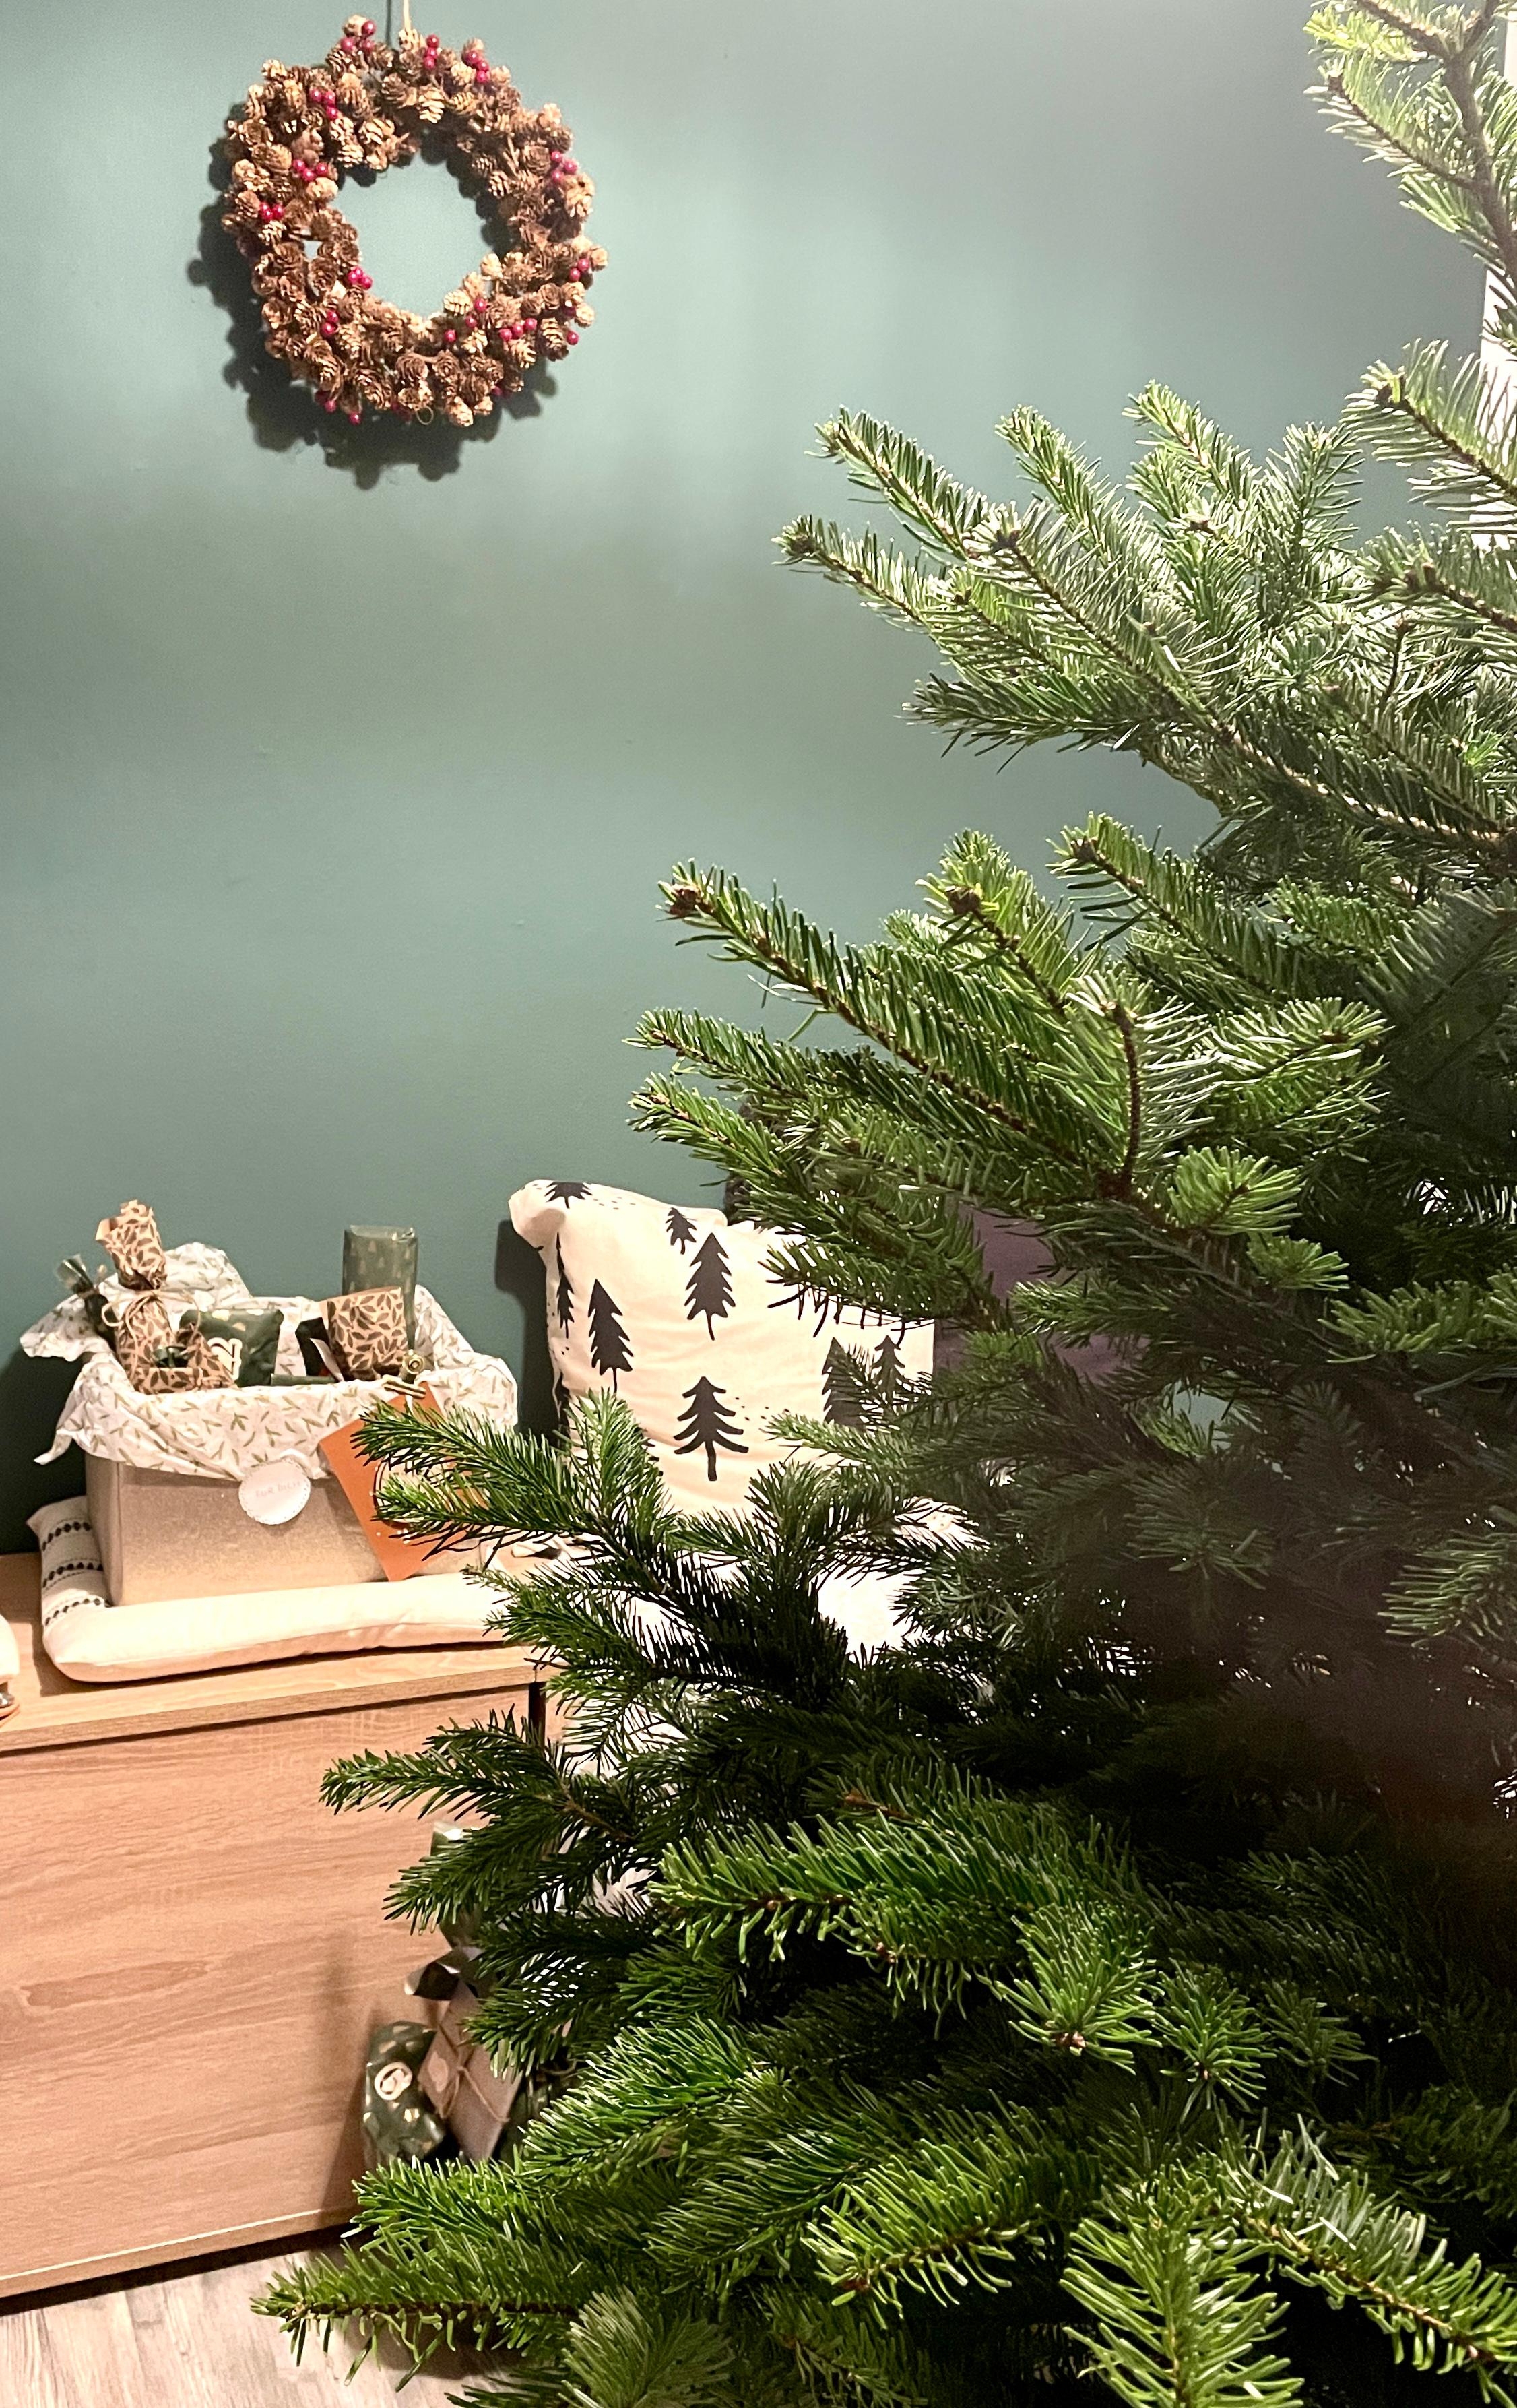 Sneak Peak.... der Baum steht... Schmuck folgt🎄😍
#mostwonderfultime#xmas#couchstyle#couchmagazin#weihnachtszeit#interior